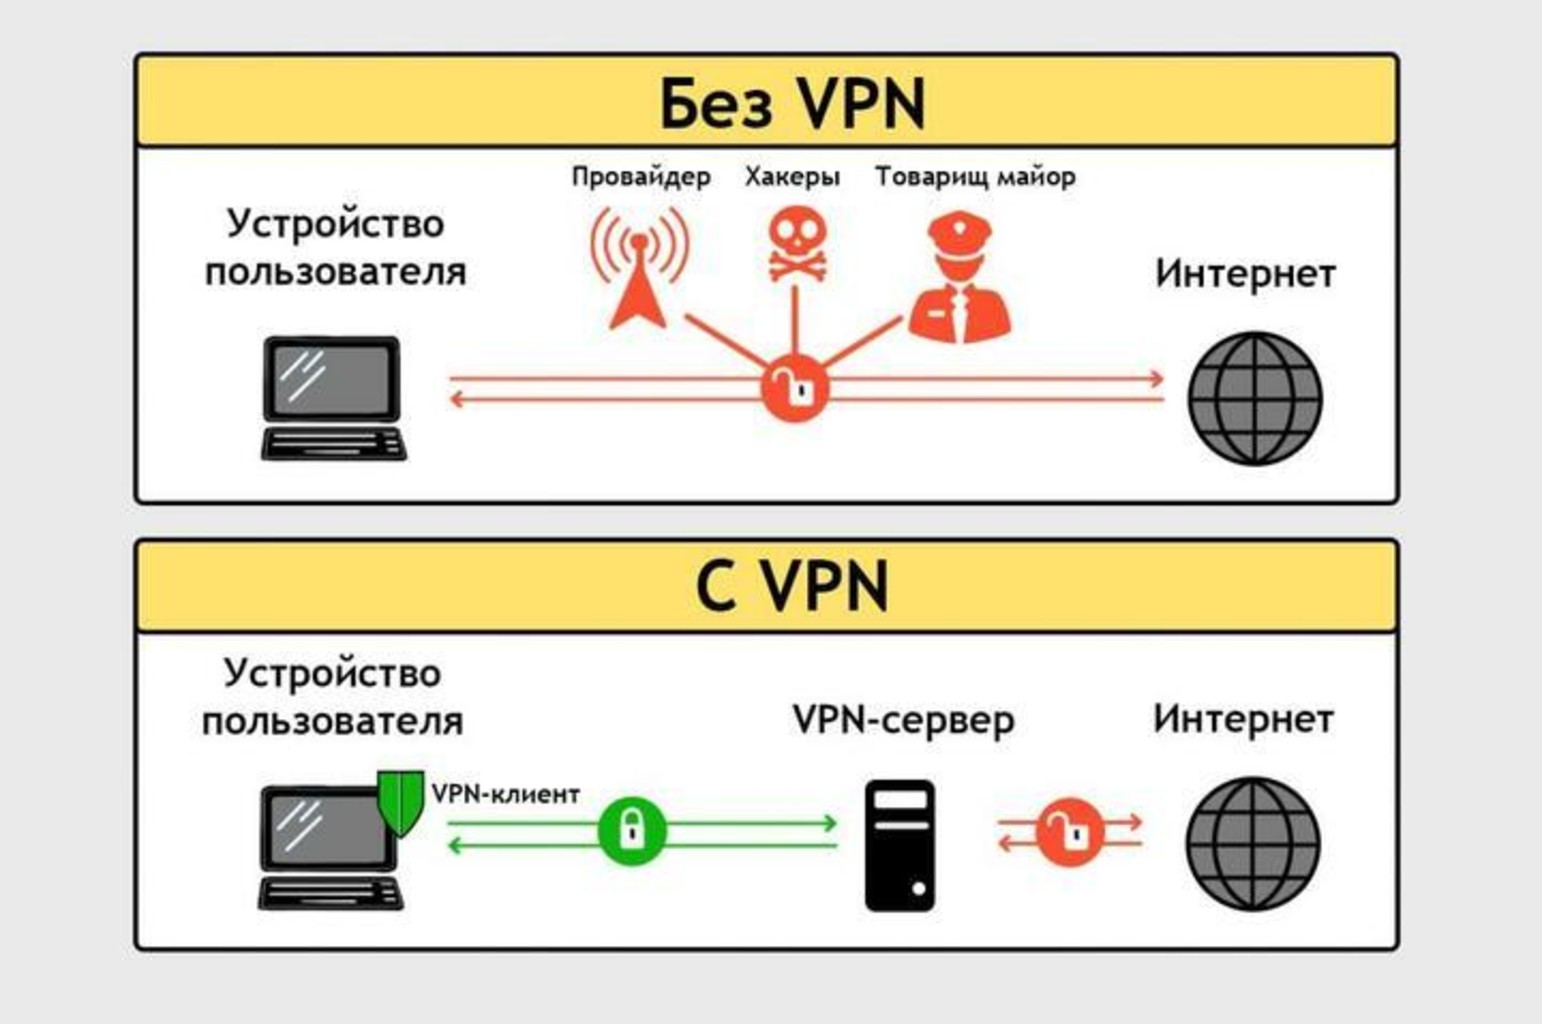 Схема использования VPN. Изображение: abarona.org